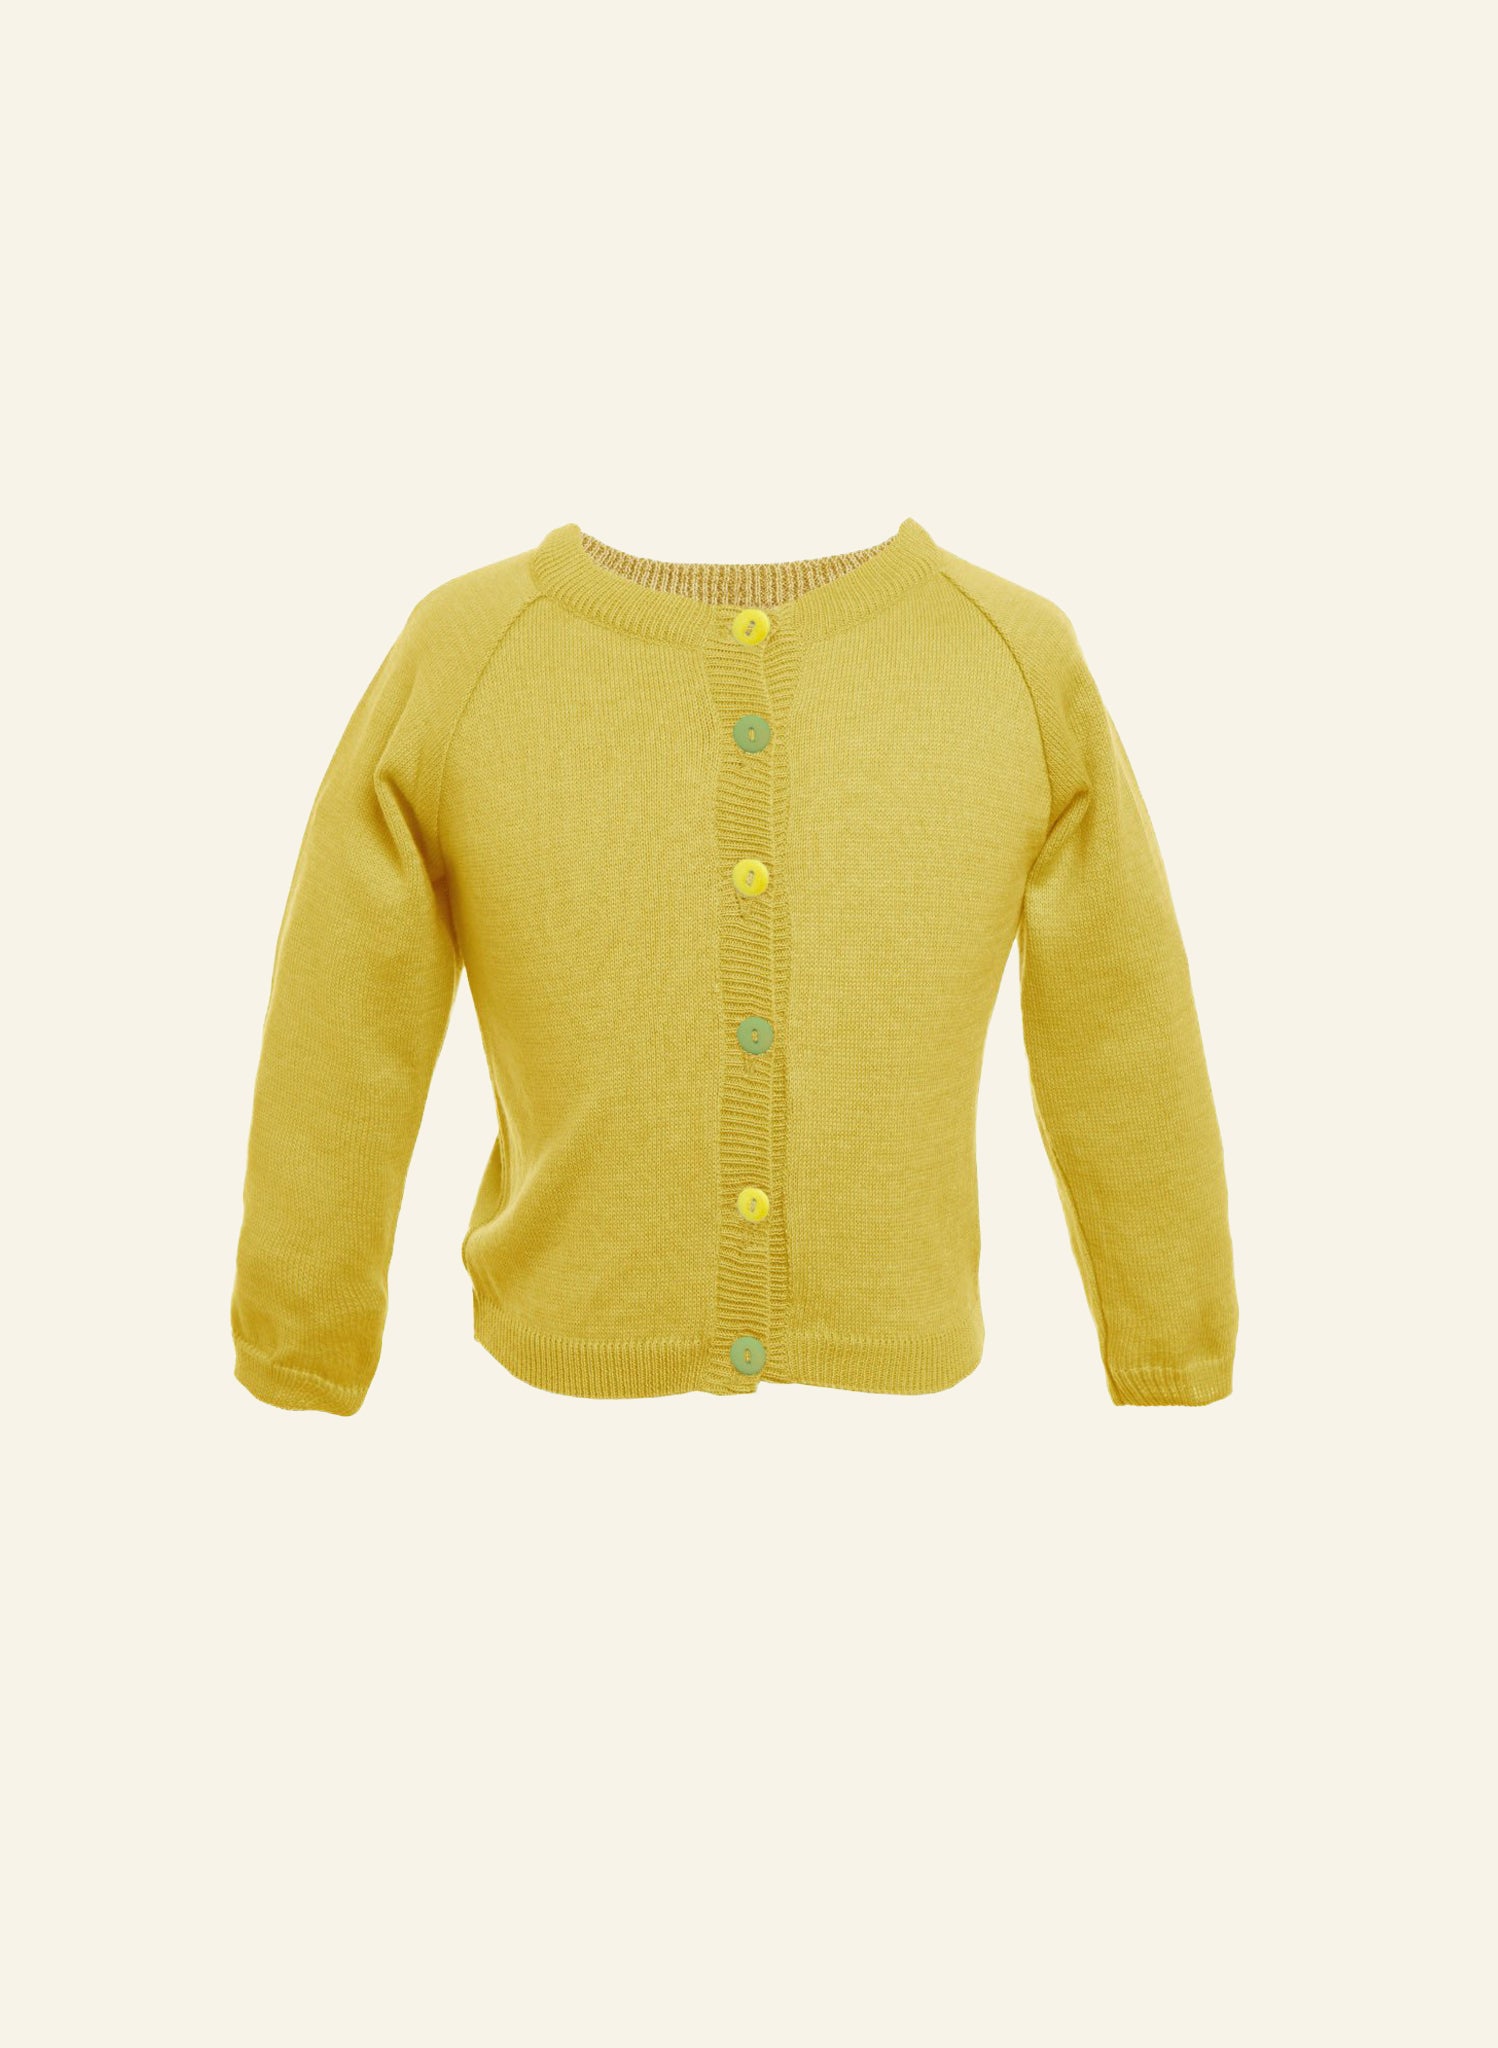 Children's Classic Cardigan - Mustard Yellow